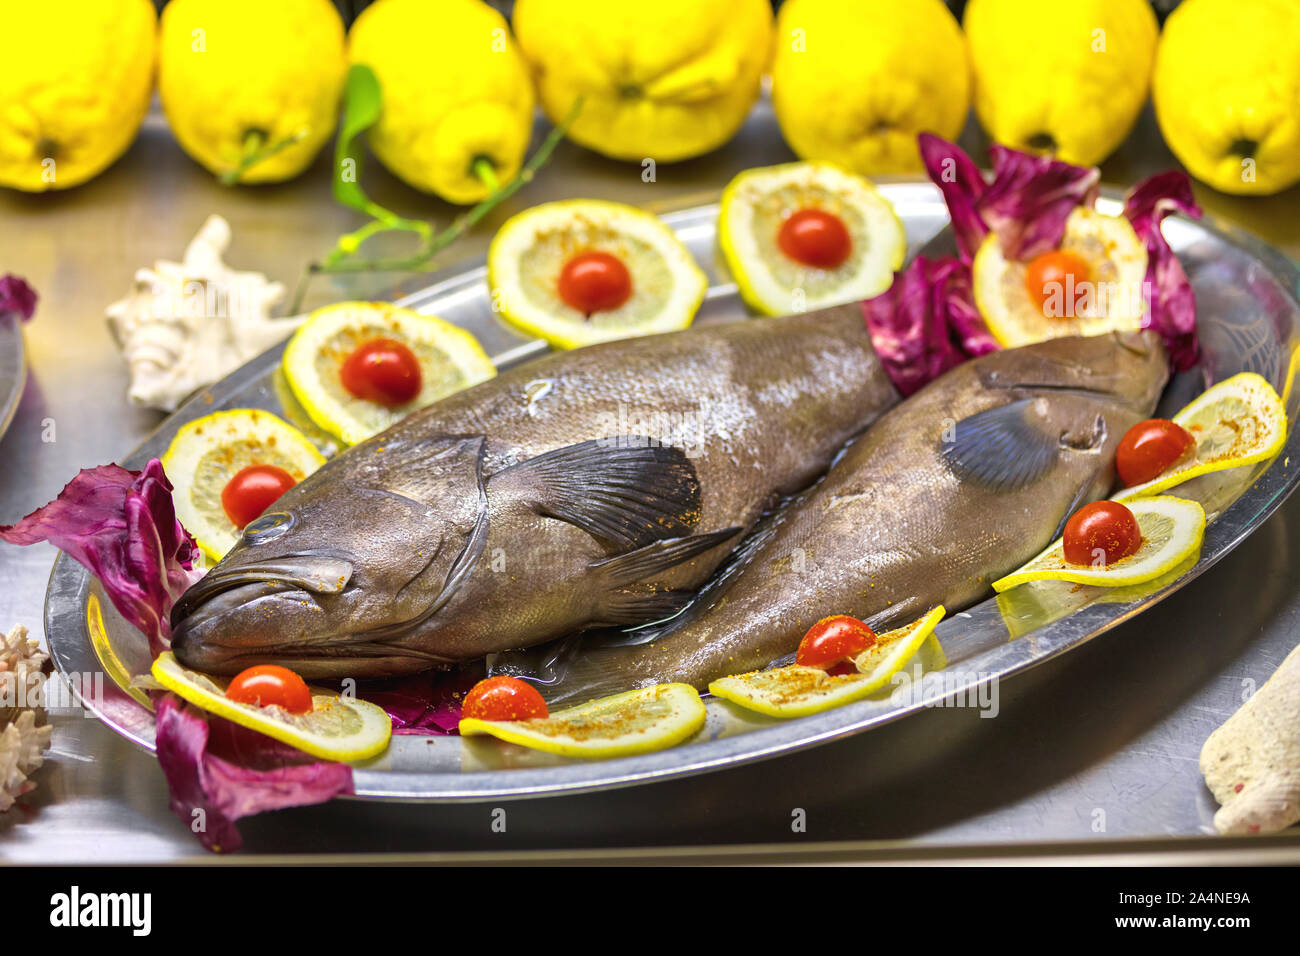 Presentazione di fresco pesce cernia al limone impreparati nel ristorante vassoio - iss detto di avere il meglio del gusto di tutti i pesci del Mediterraneo Foto Stock